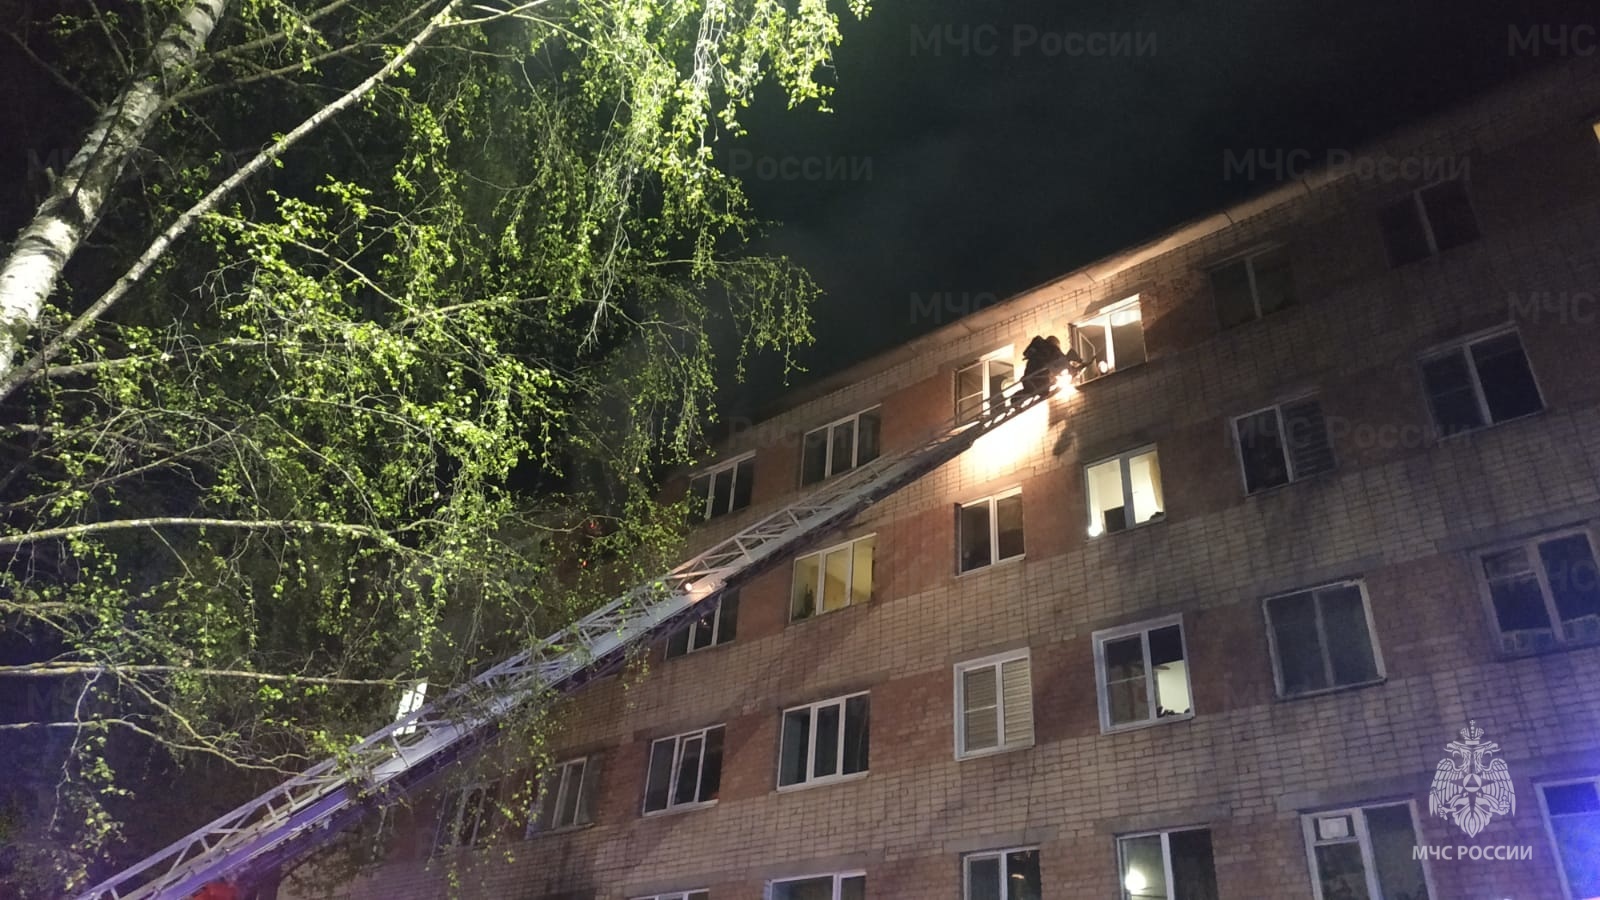 40 костромичей спасли из горящей многоэтажки в День Победы